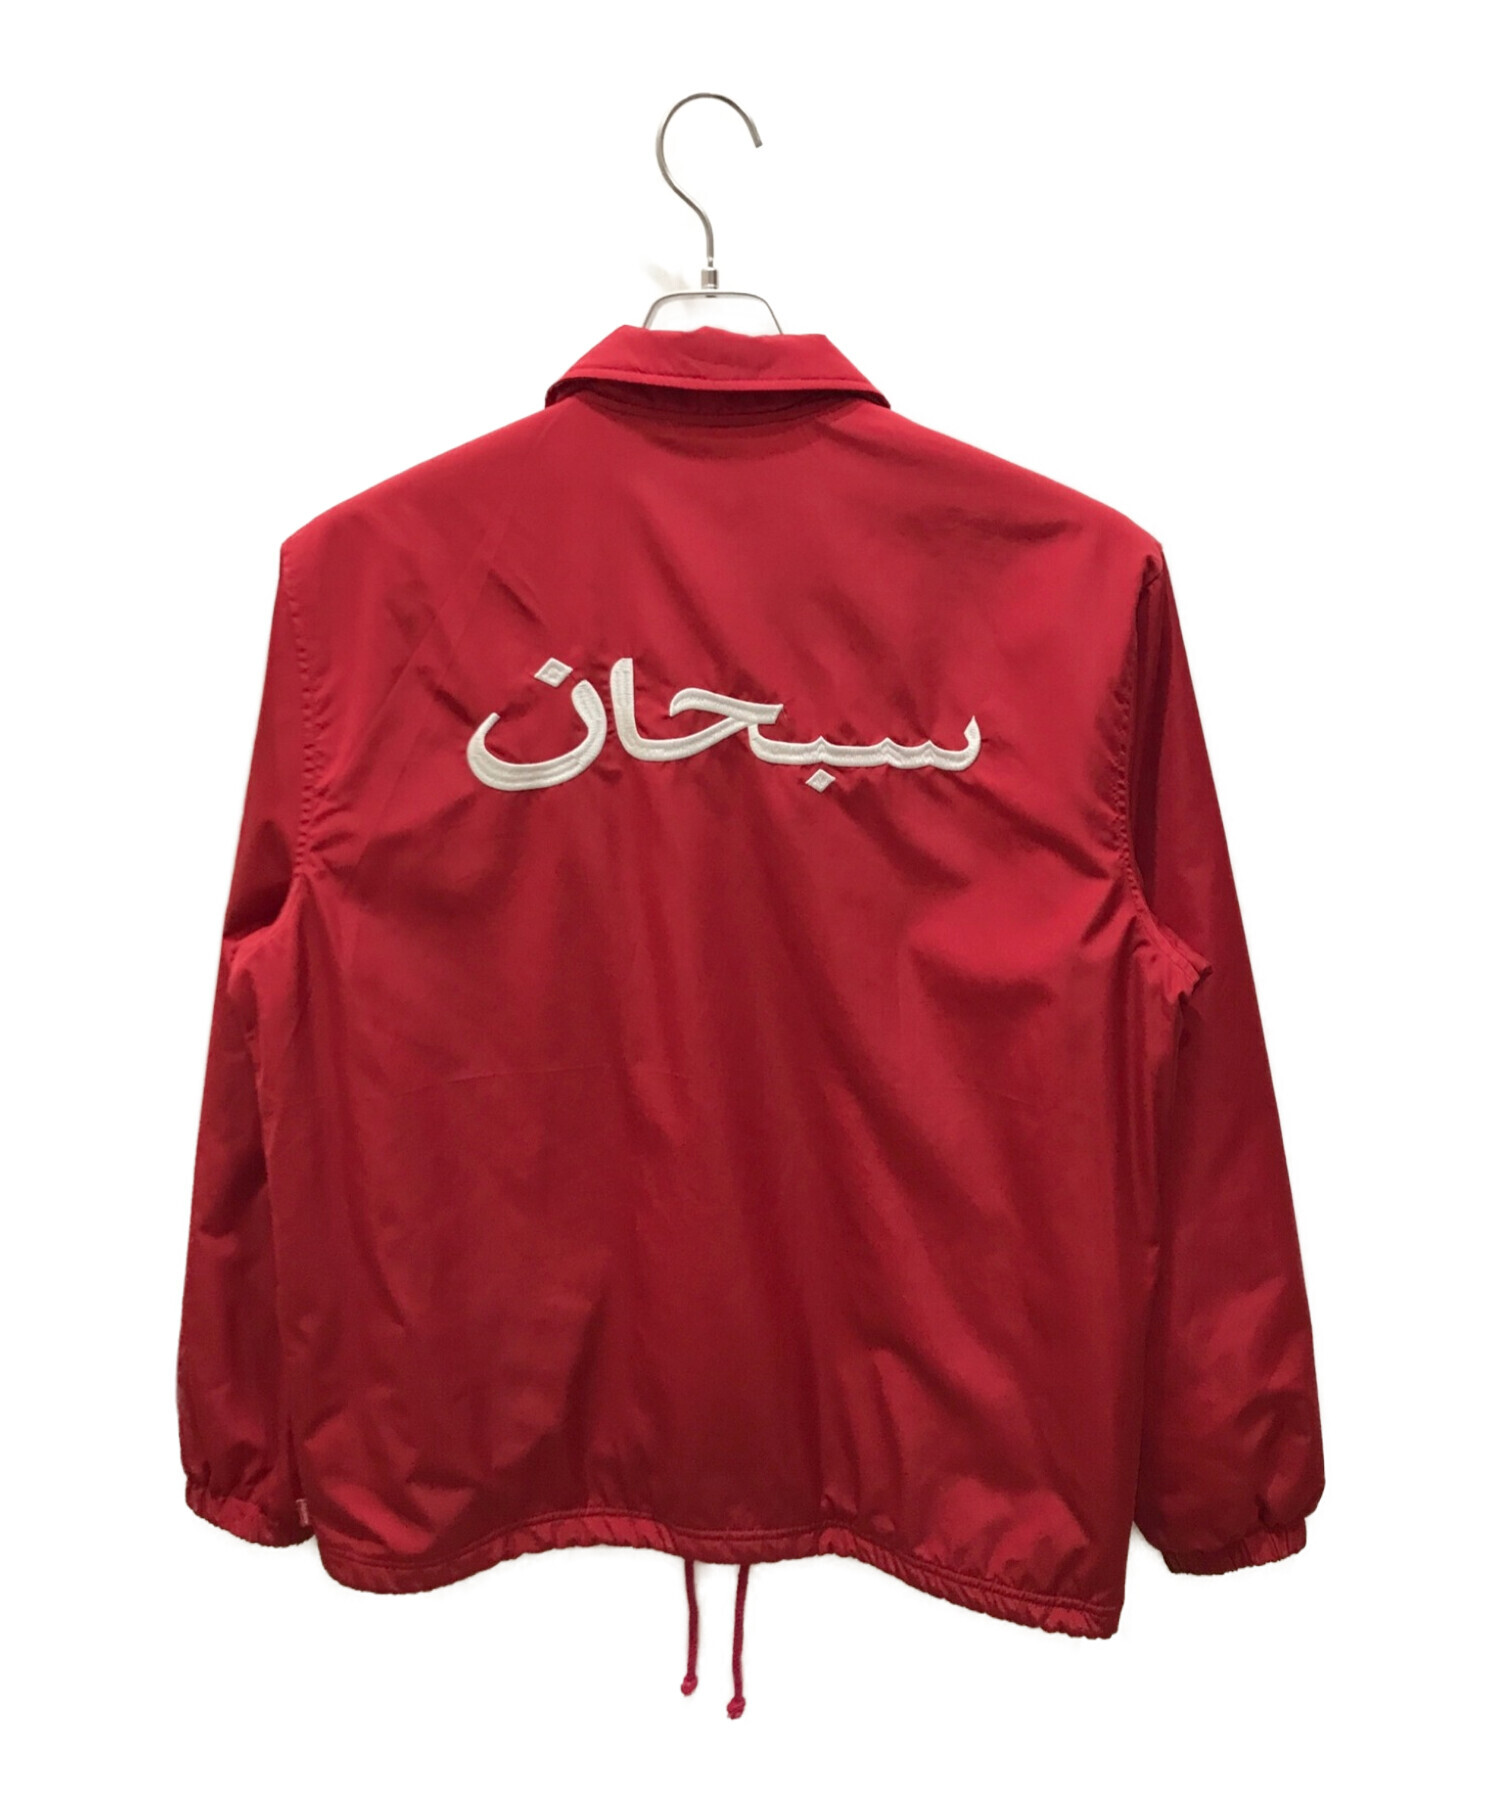 状態よく美品だと思いますsupreme arabic logo coach jacket アラビックM